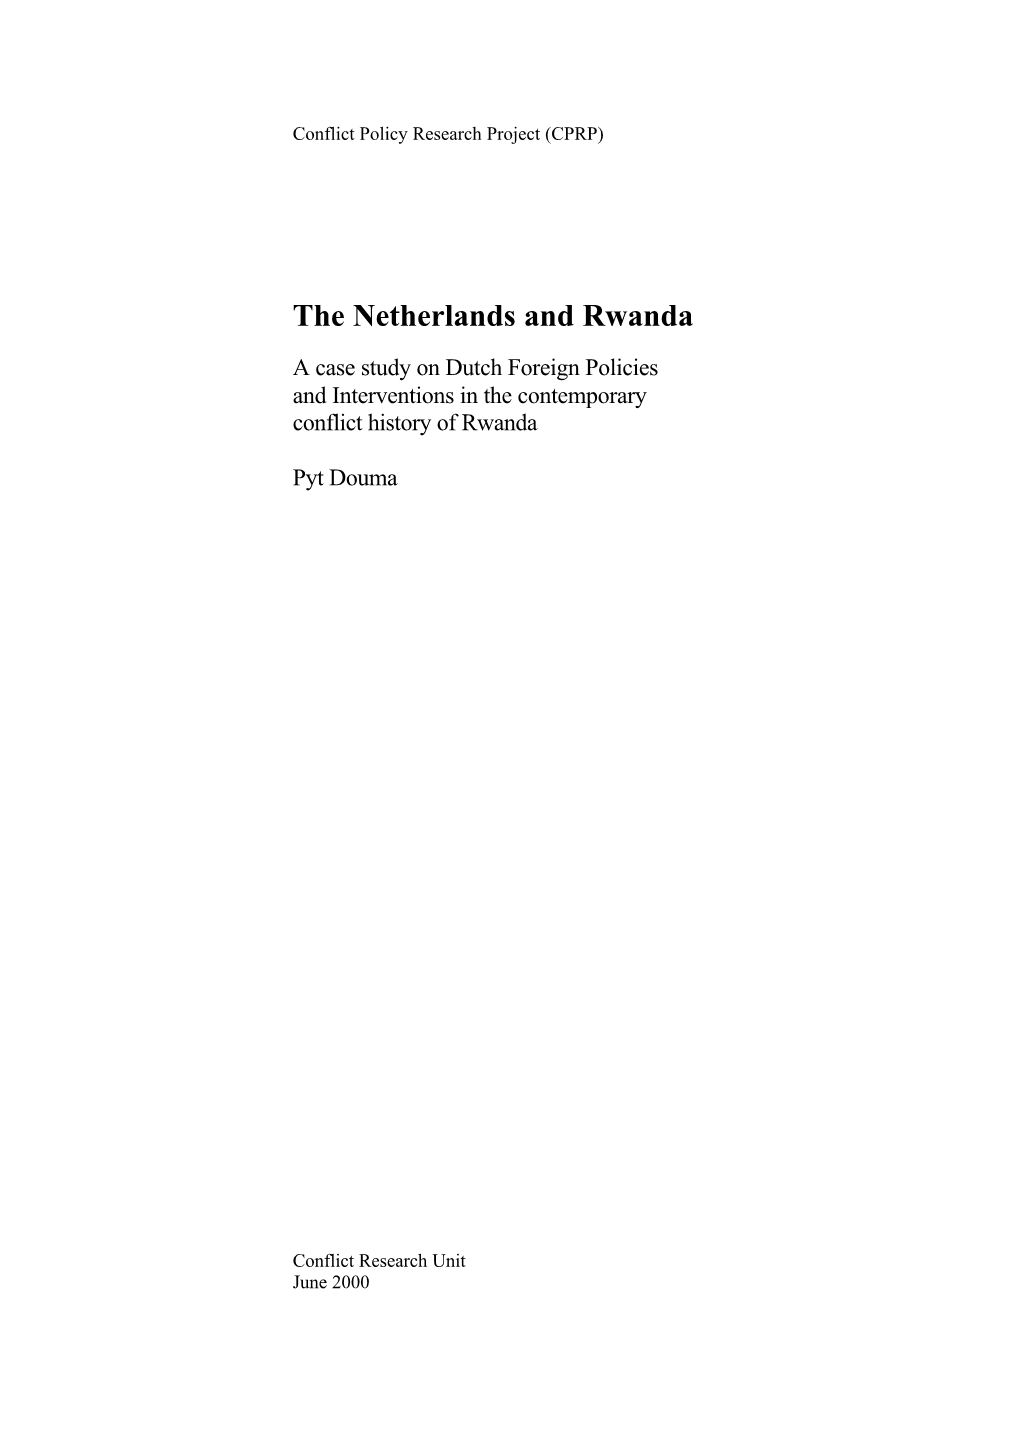 The Netherlands and Rwanda